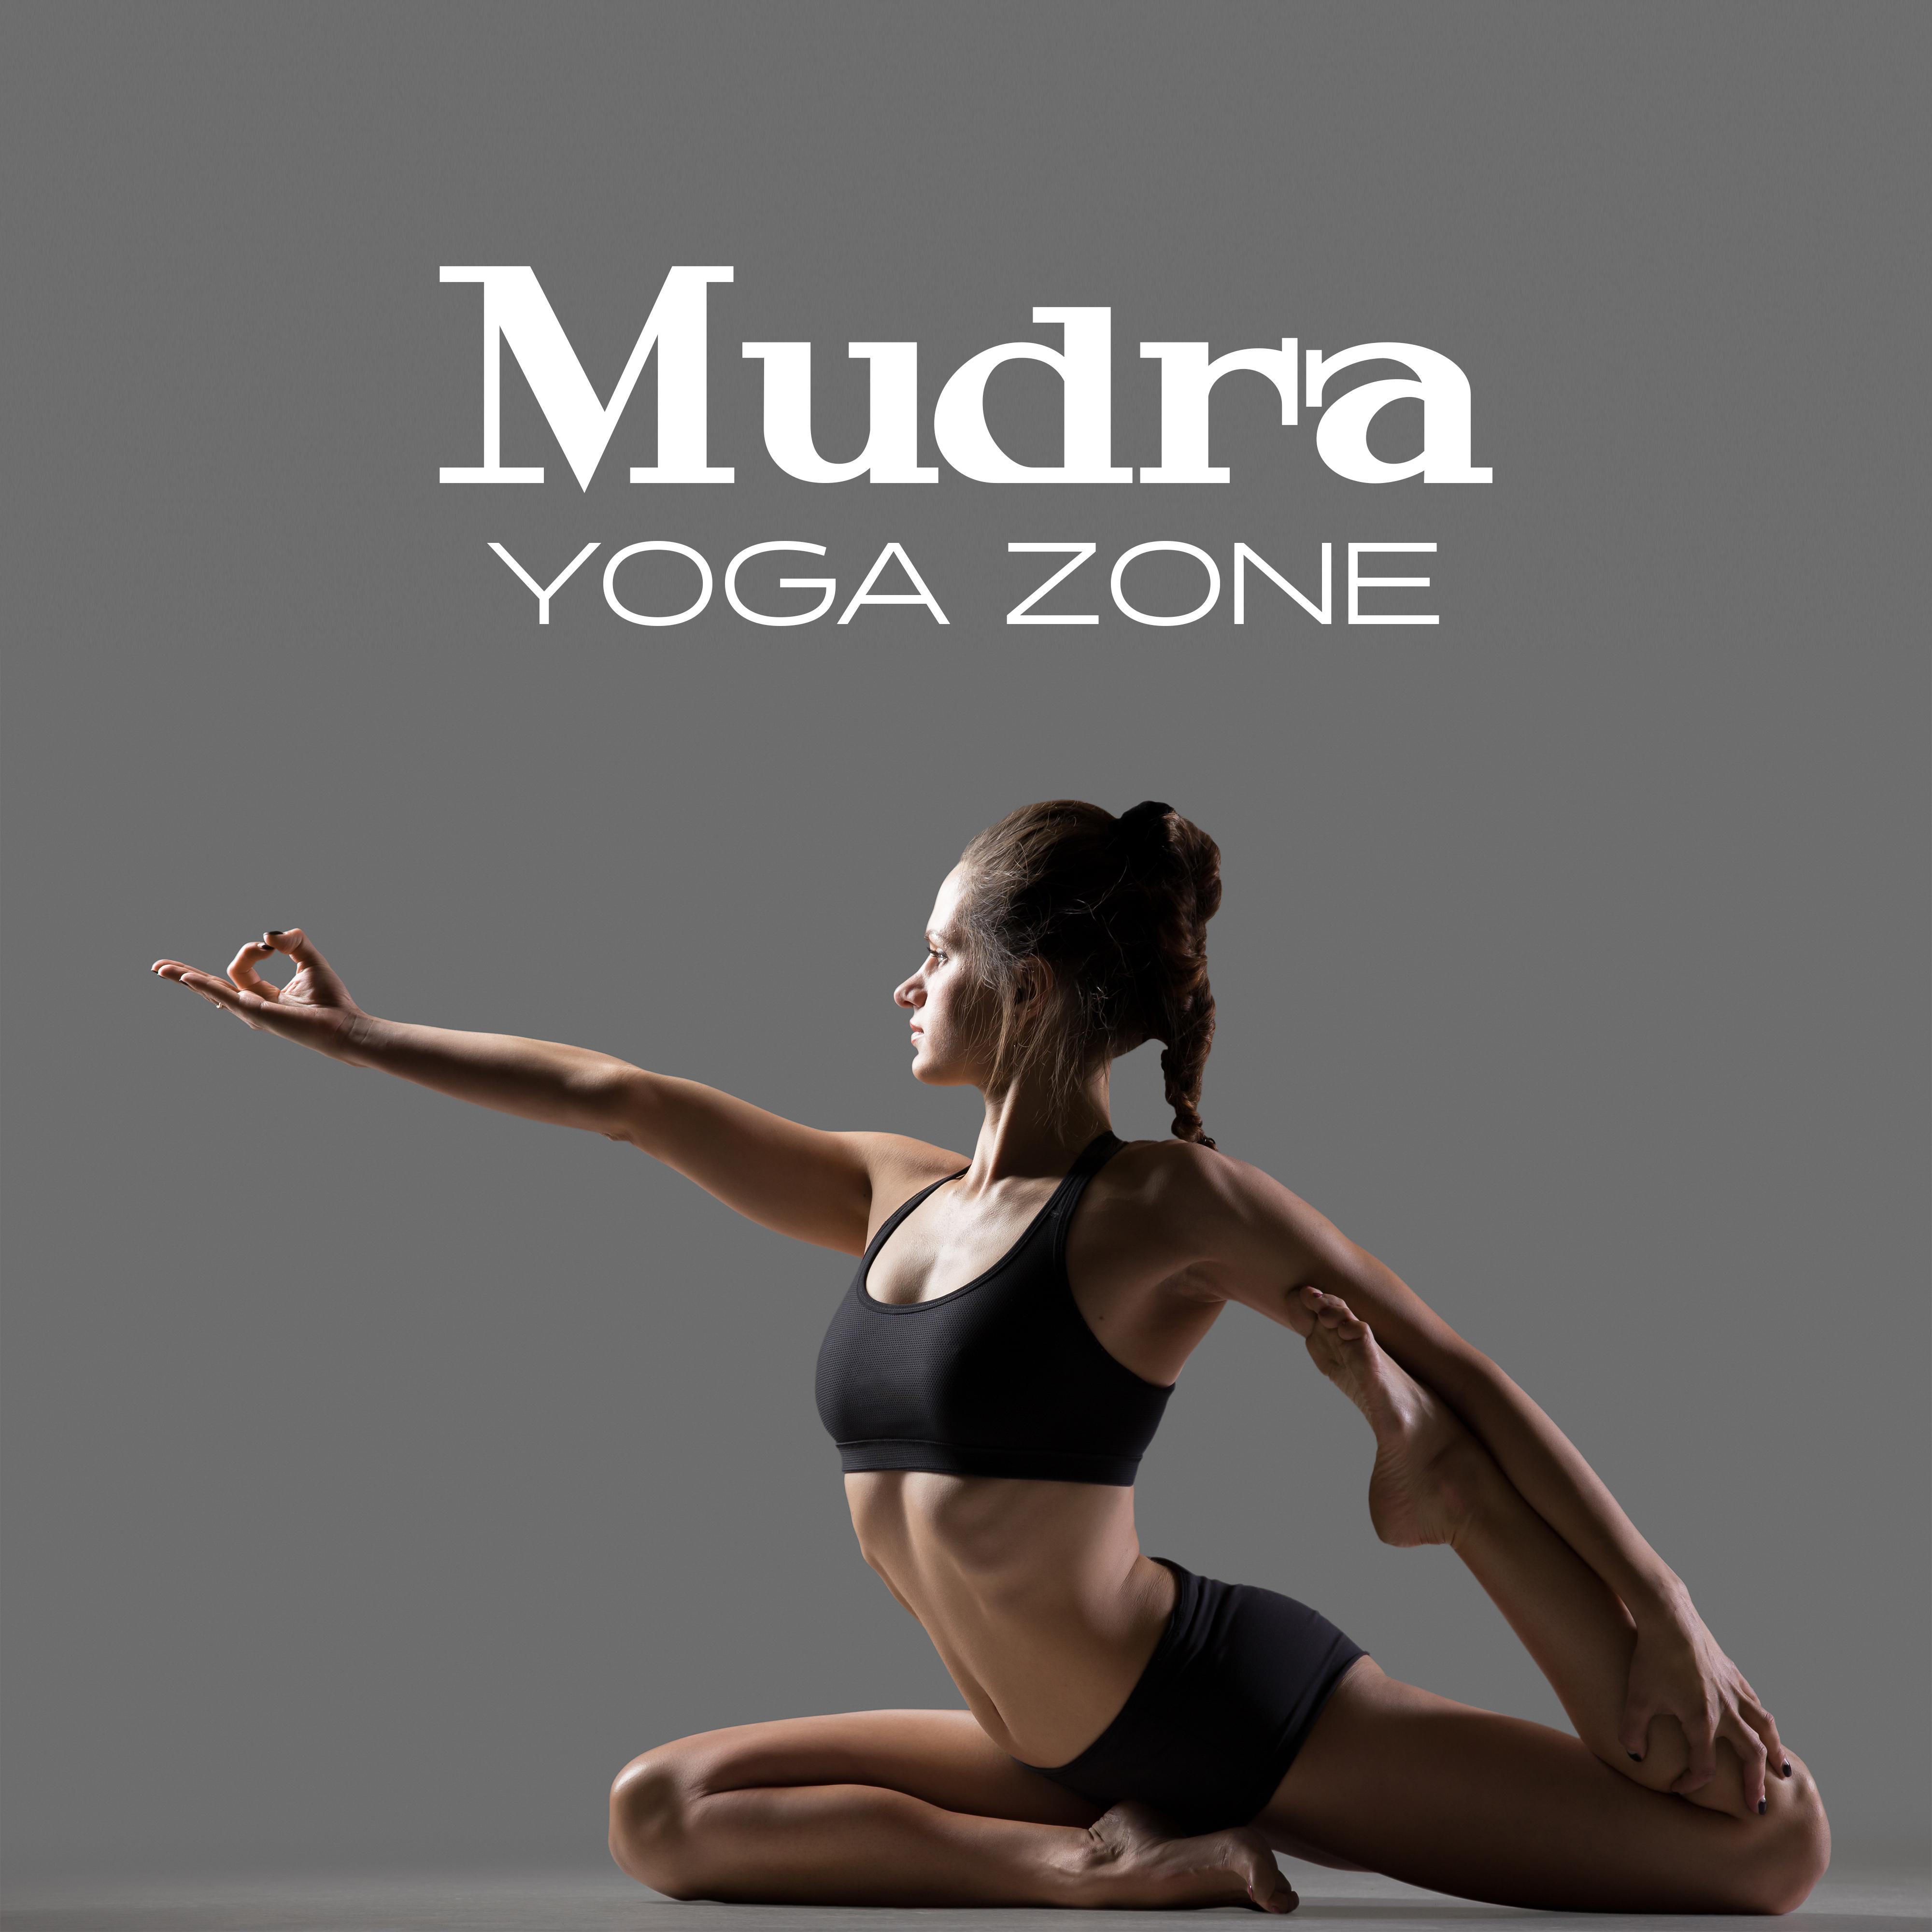 Mudra Yoga Zone